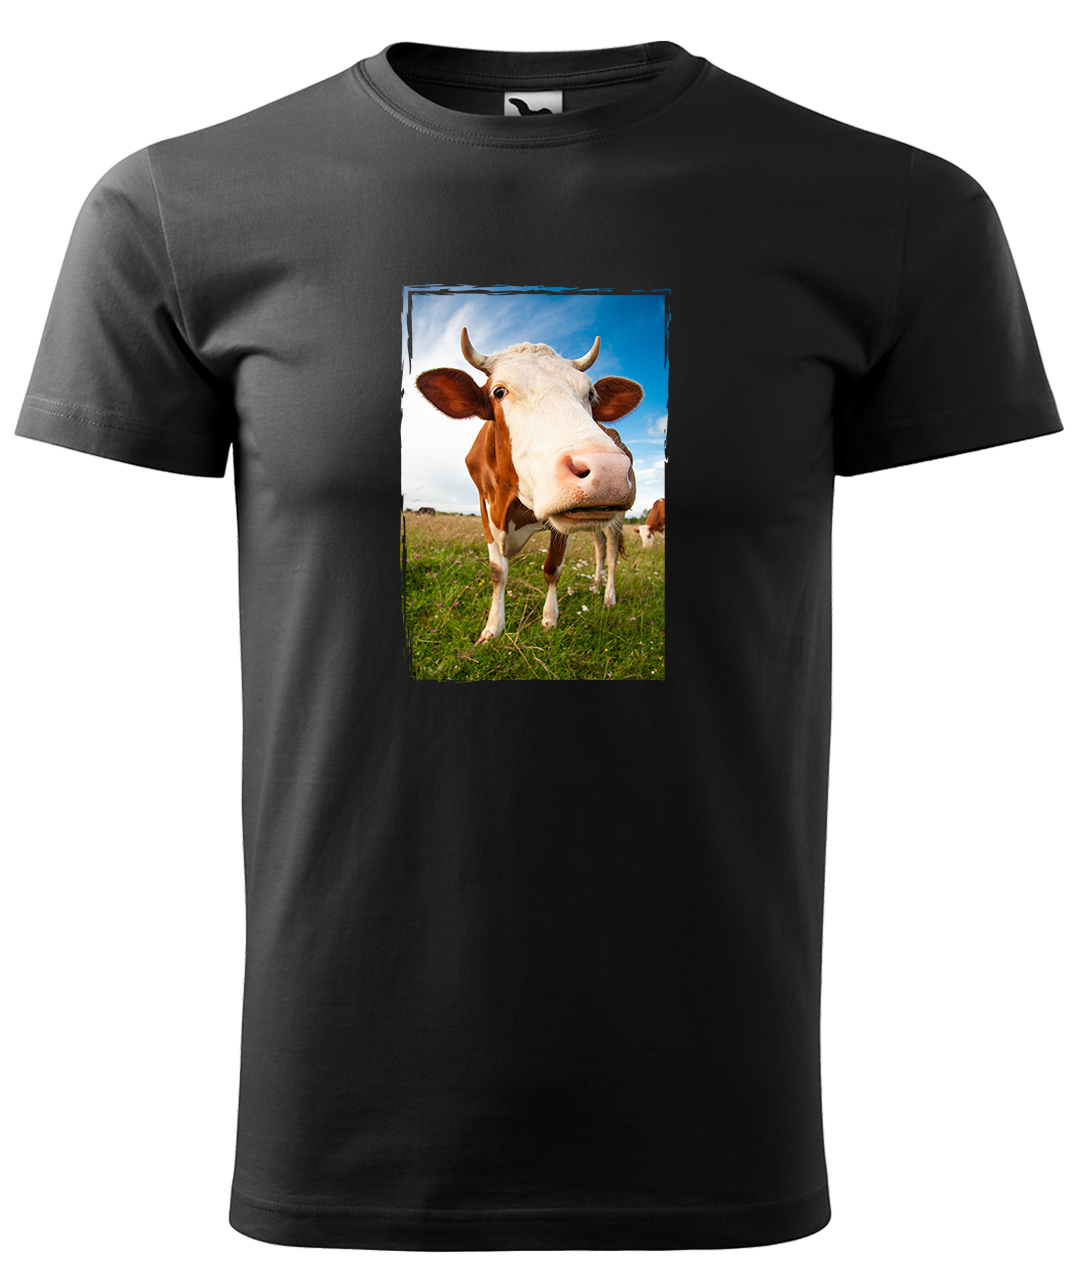 Dětské tričko s krávou - Na pastvě Velikost: 8 let / 134 cm, Barva: Černá (01), Délka rukávu: Krátký rukáv